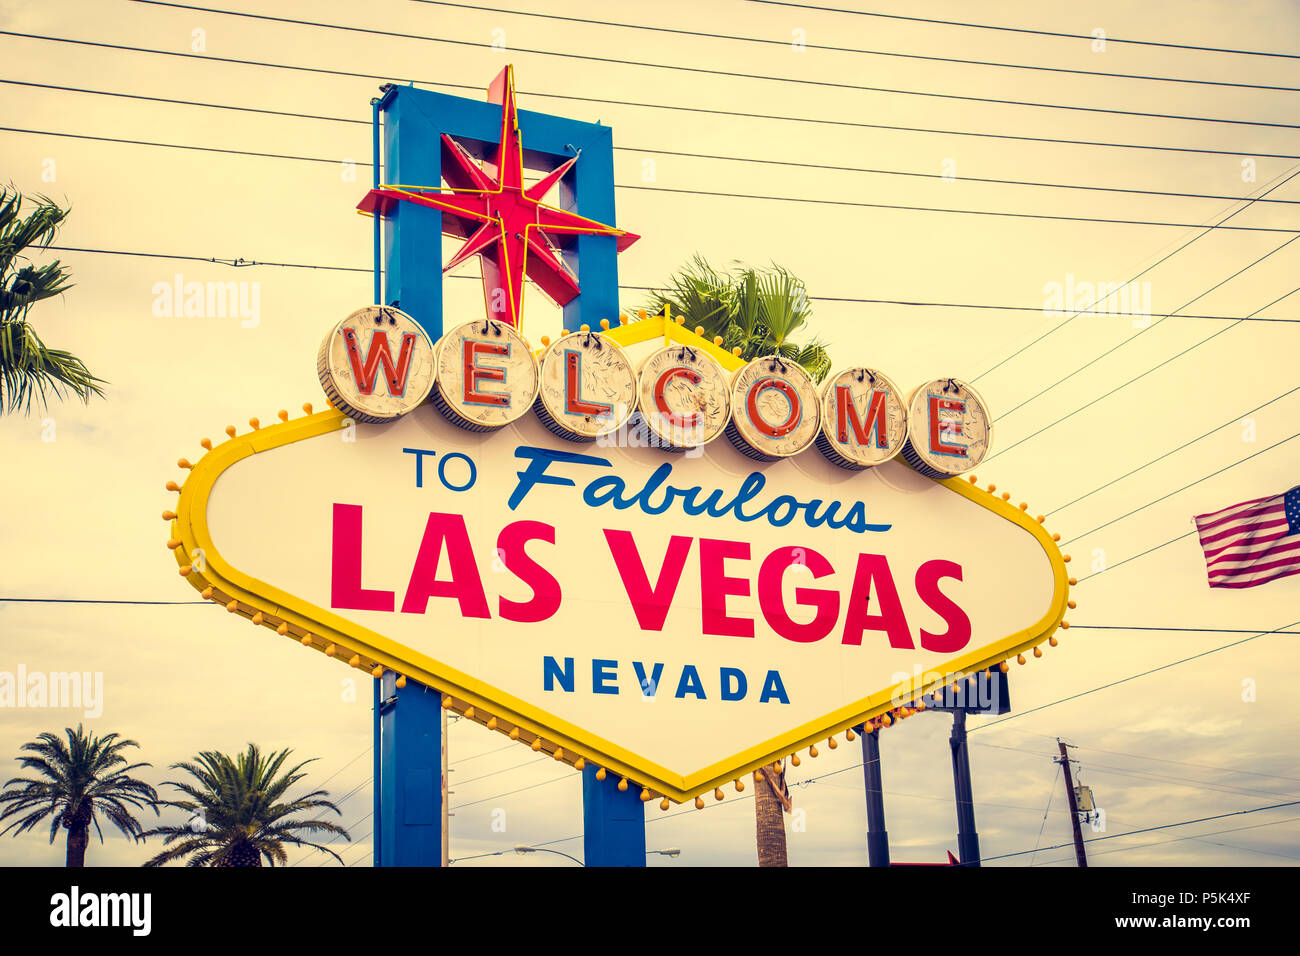 L'affichage classique de panneau Welcome to Fabulous Las Vegas à l'extrémité sud de la célèbre Strip de Las Vegas sur une belle journée ensoleillée avec filtre vintage retro Banque D'Images